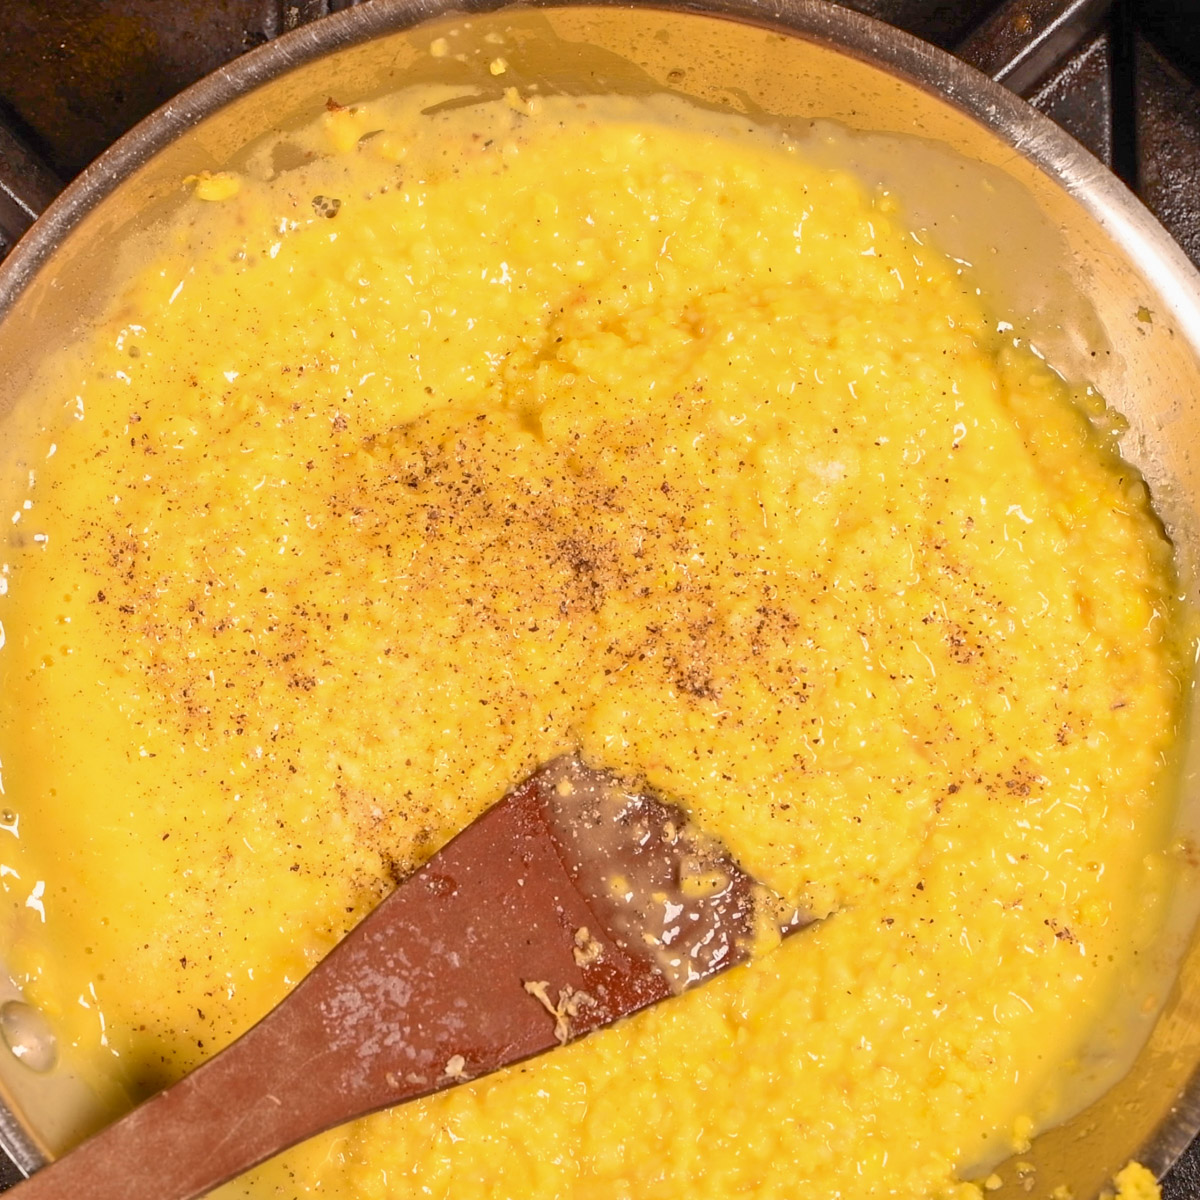 Stir corn mixture to combine.